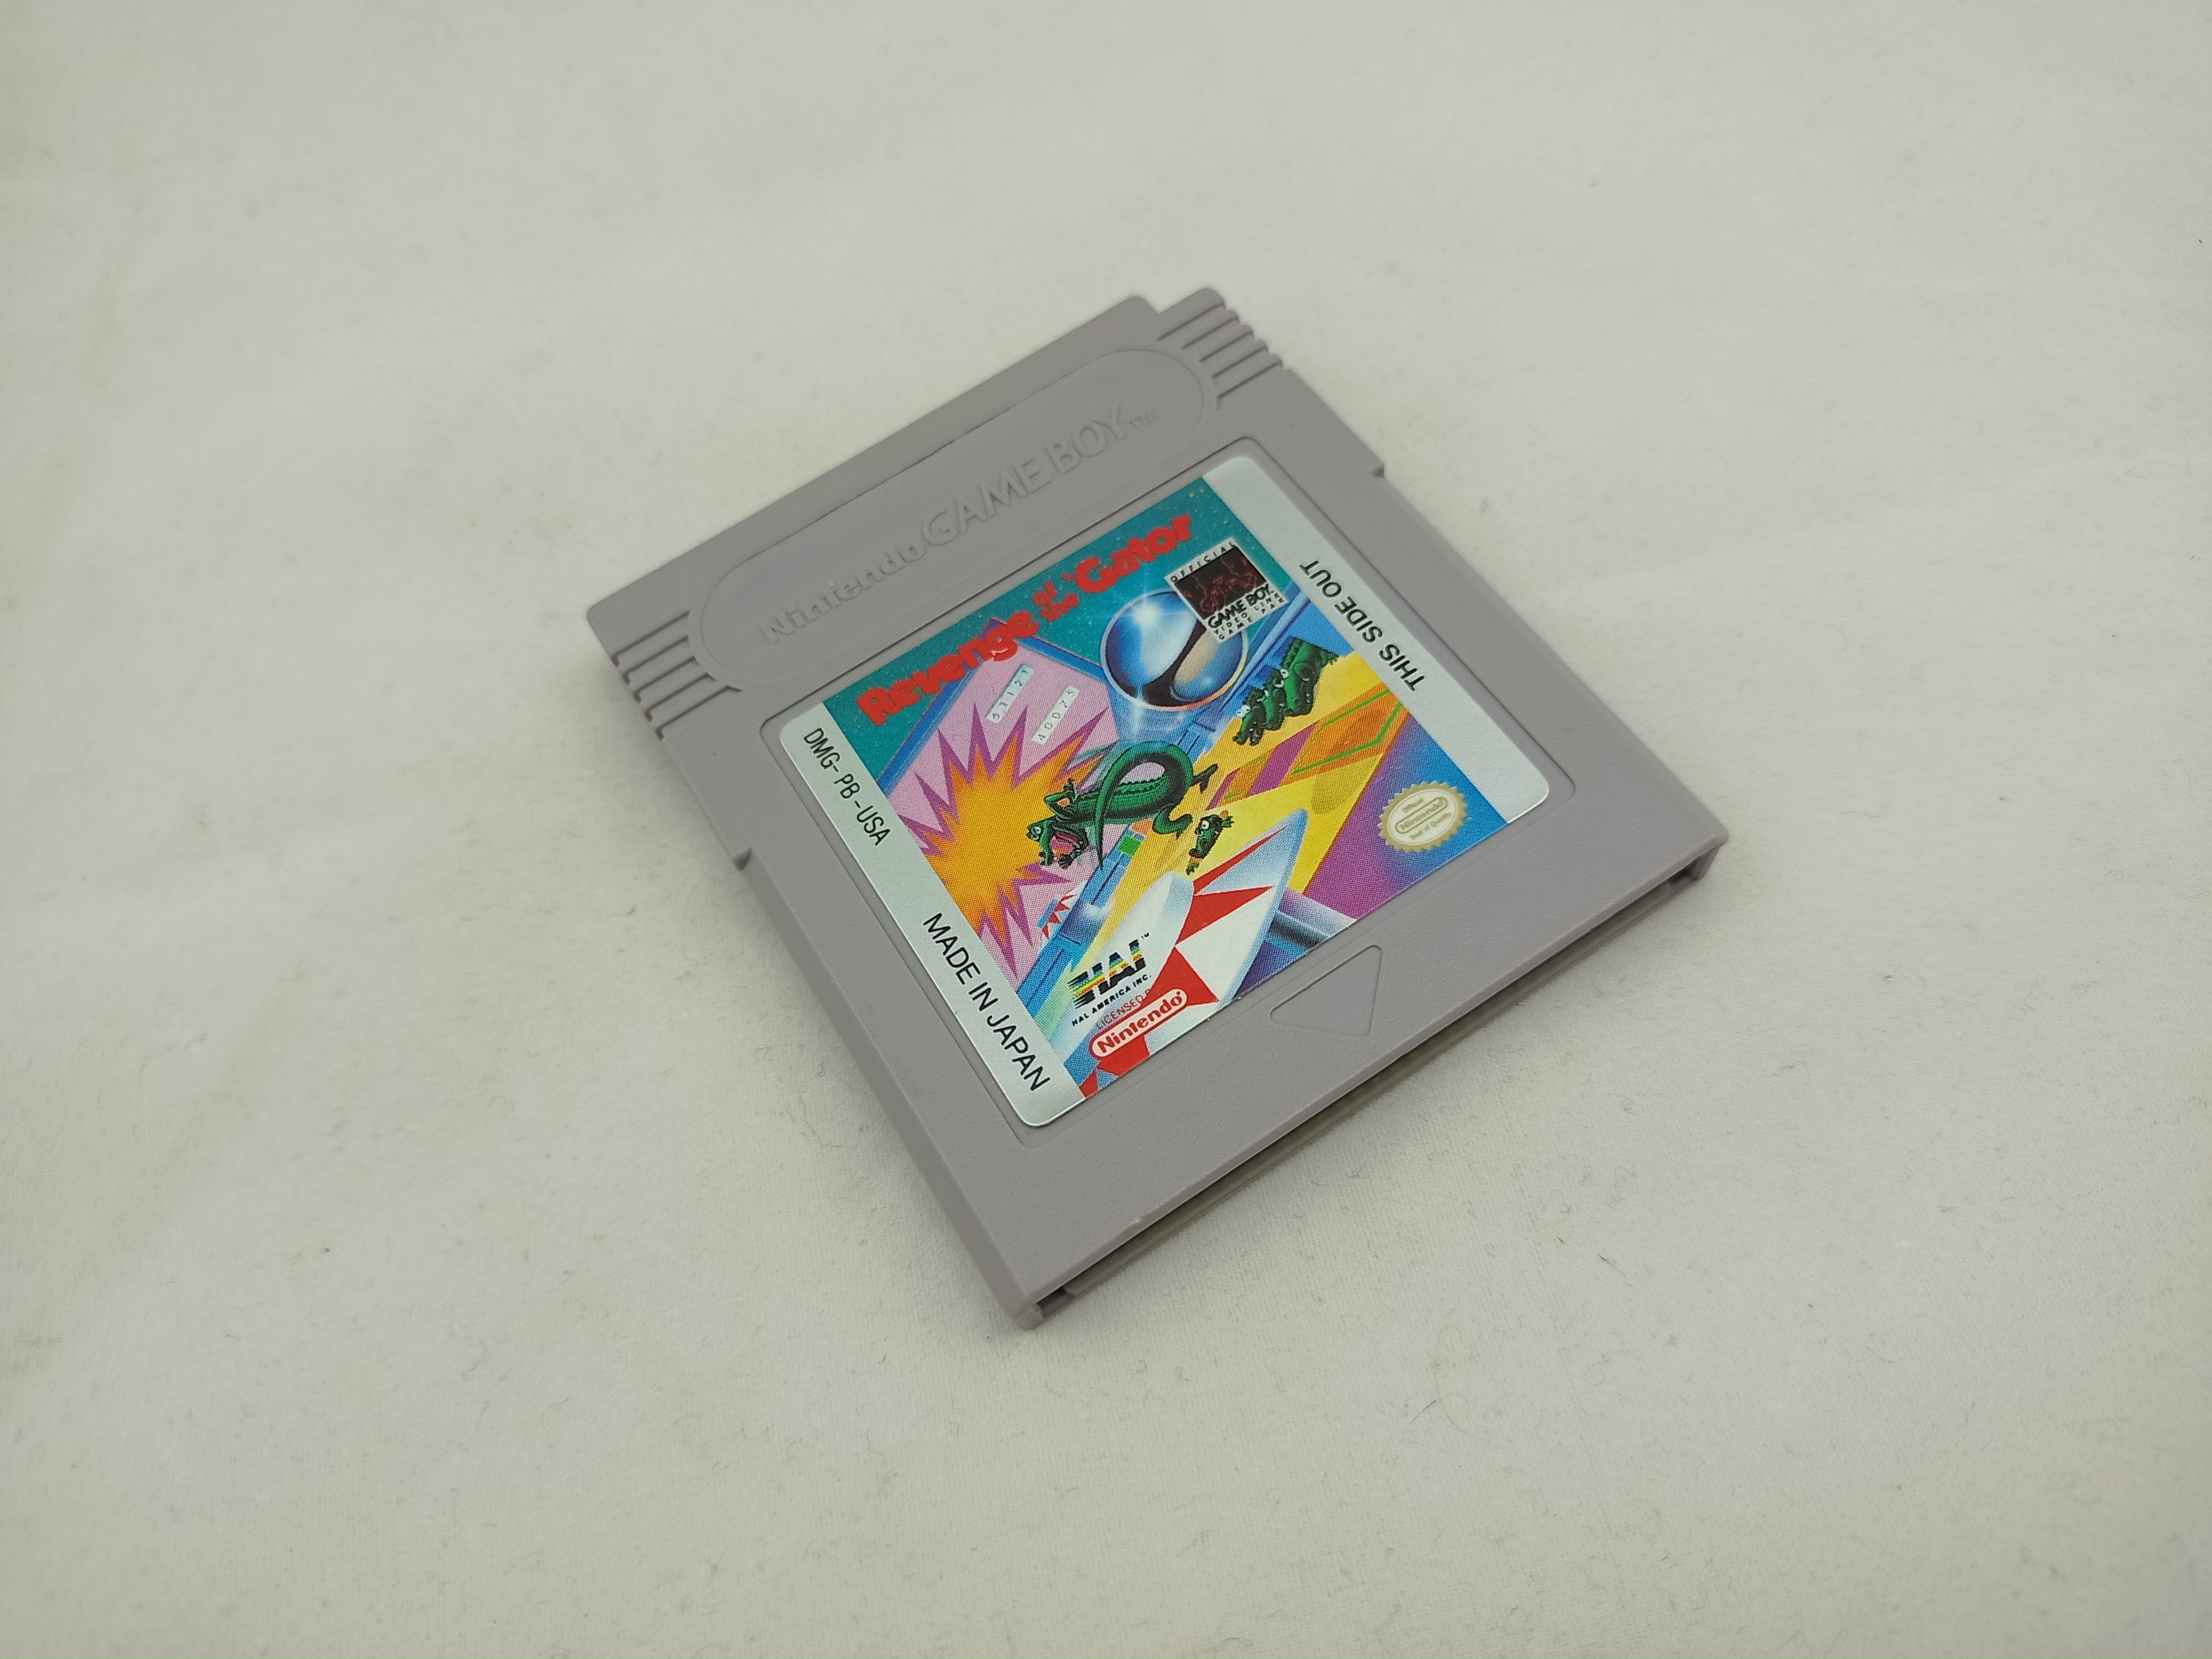 Produktbild von Revenge of the Gator Game Boy Spiel